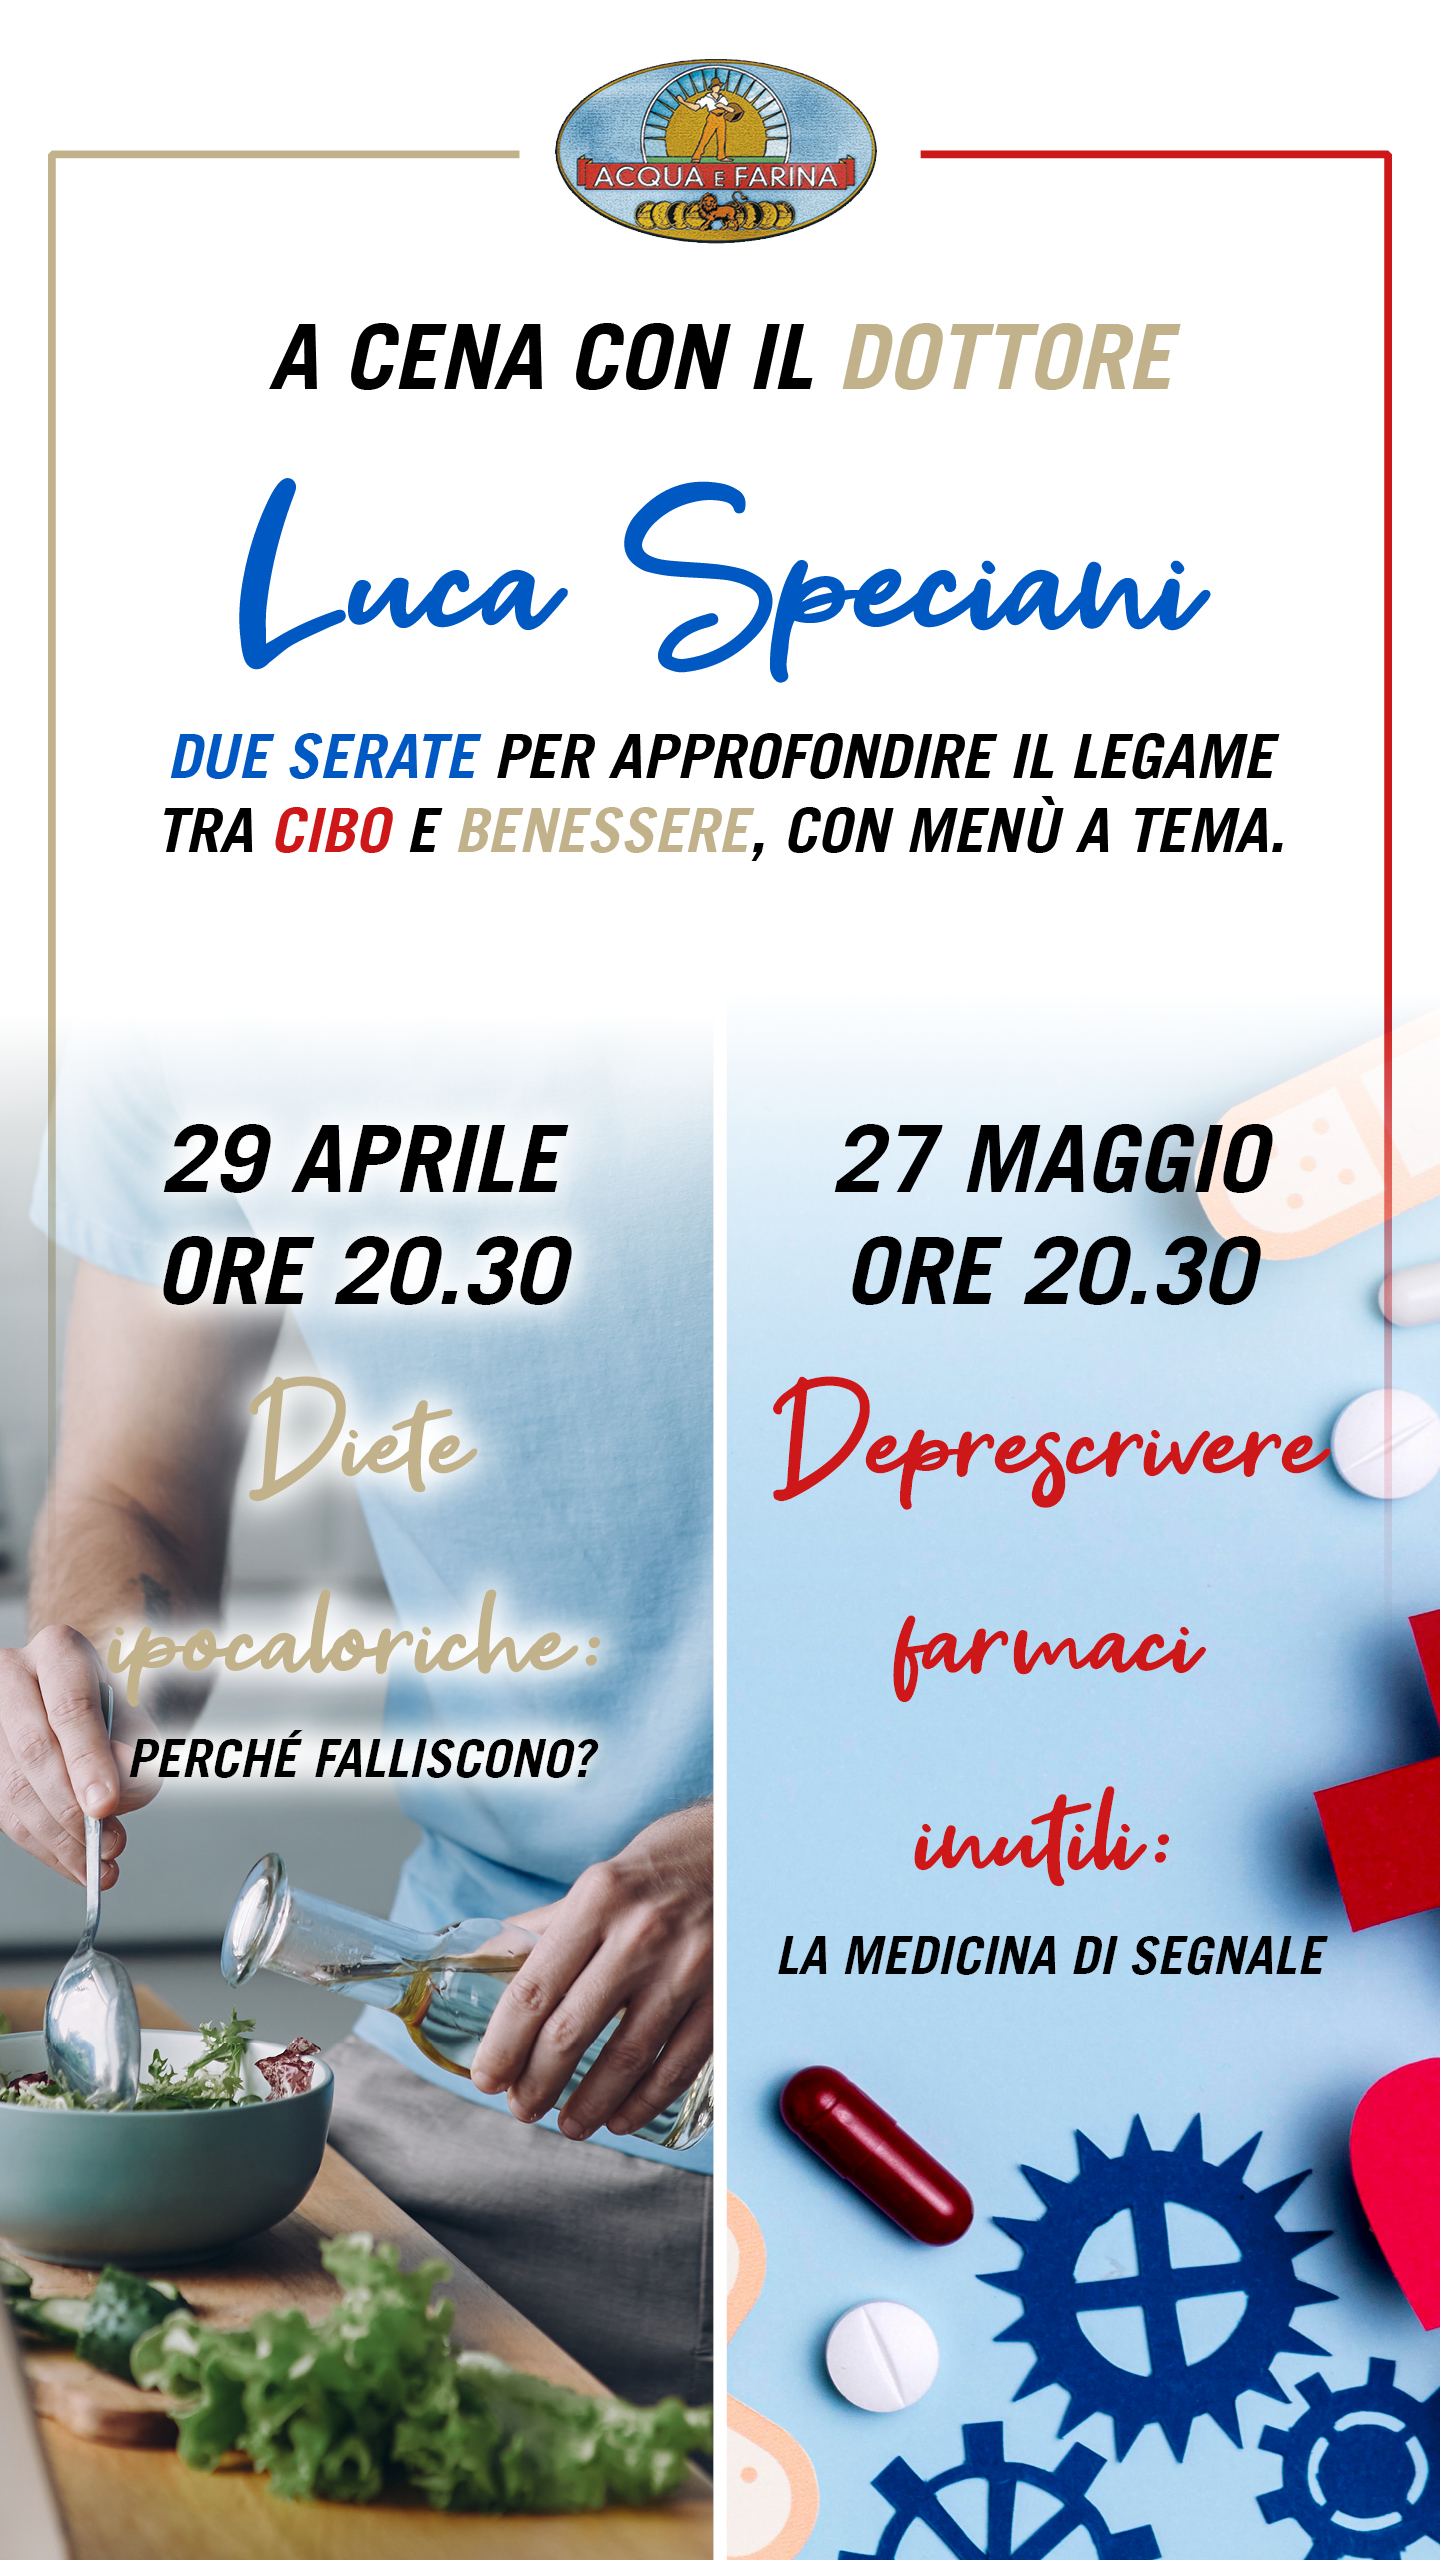 Invito a cena col dottore: appuntamento con Luca Speciani